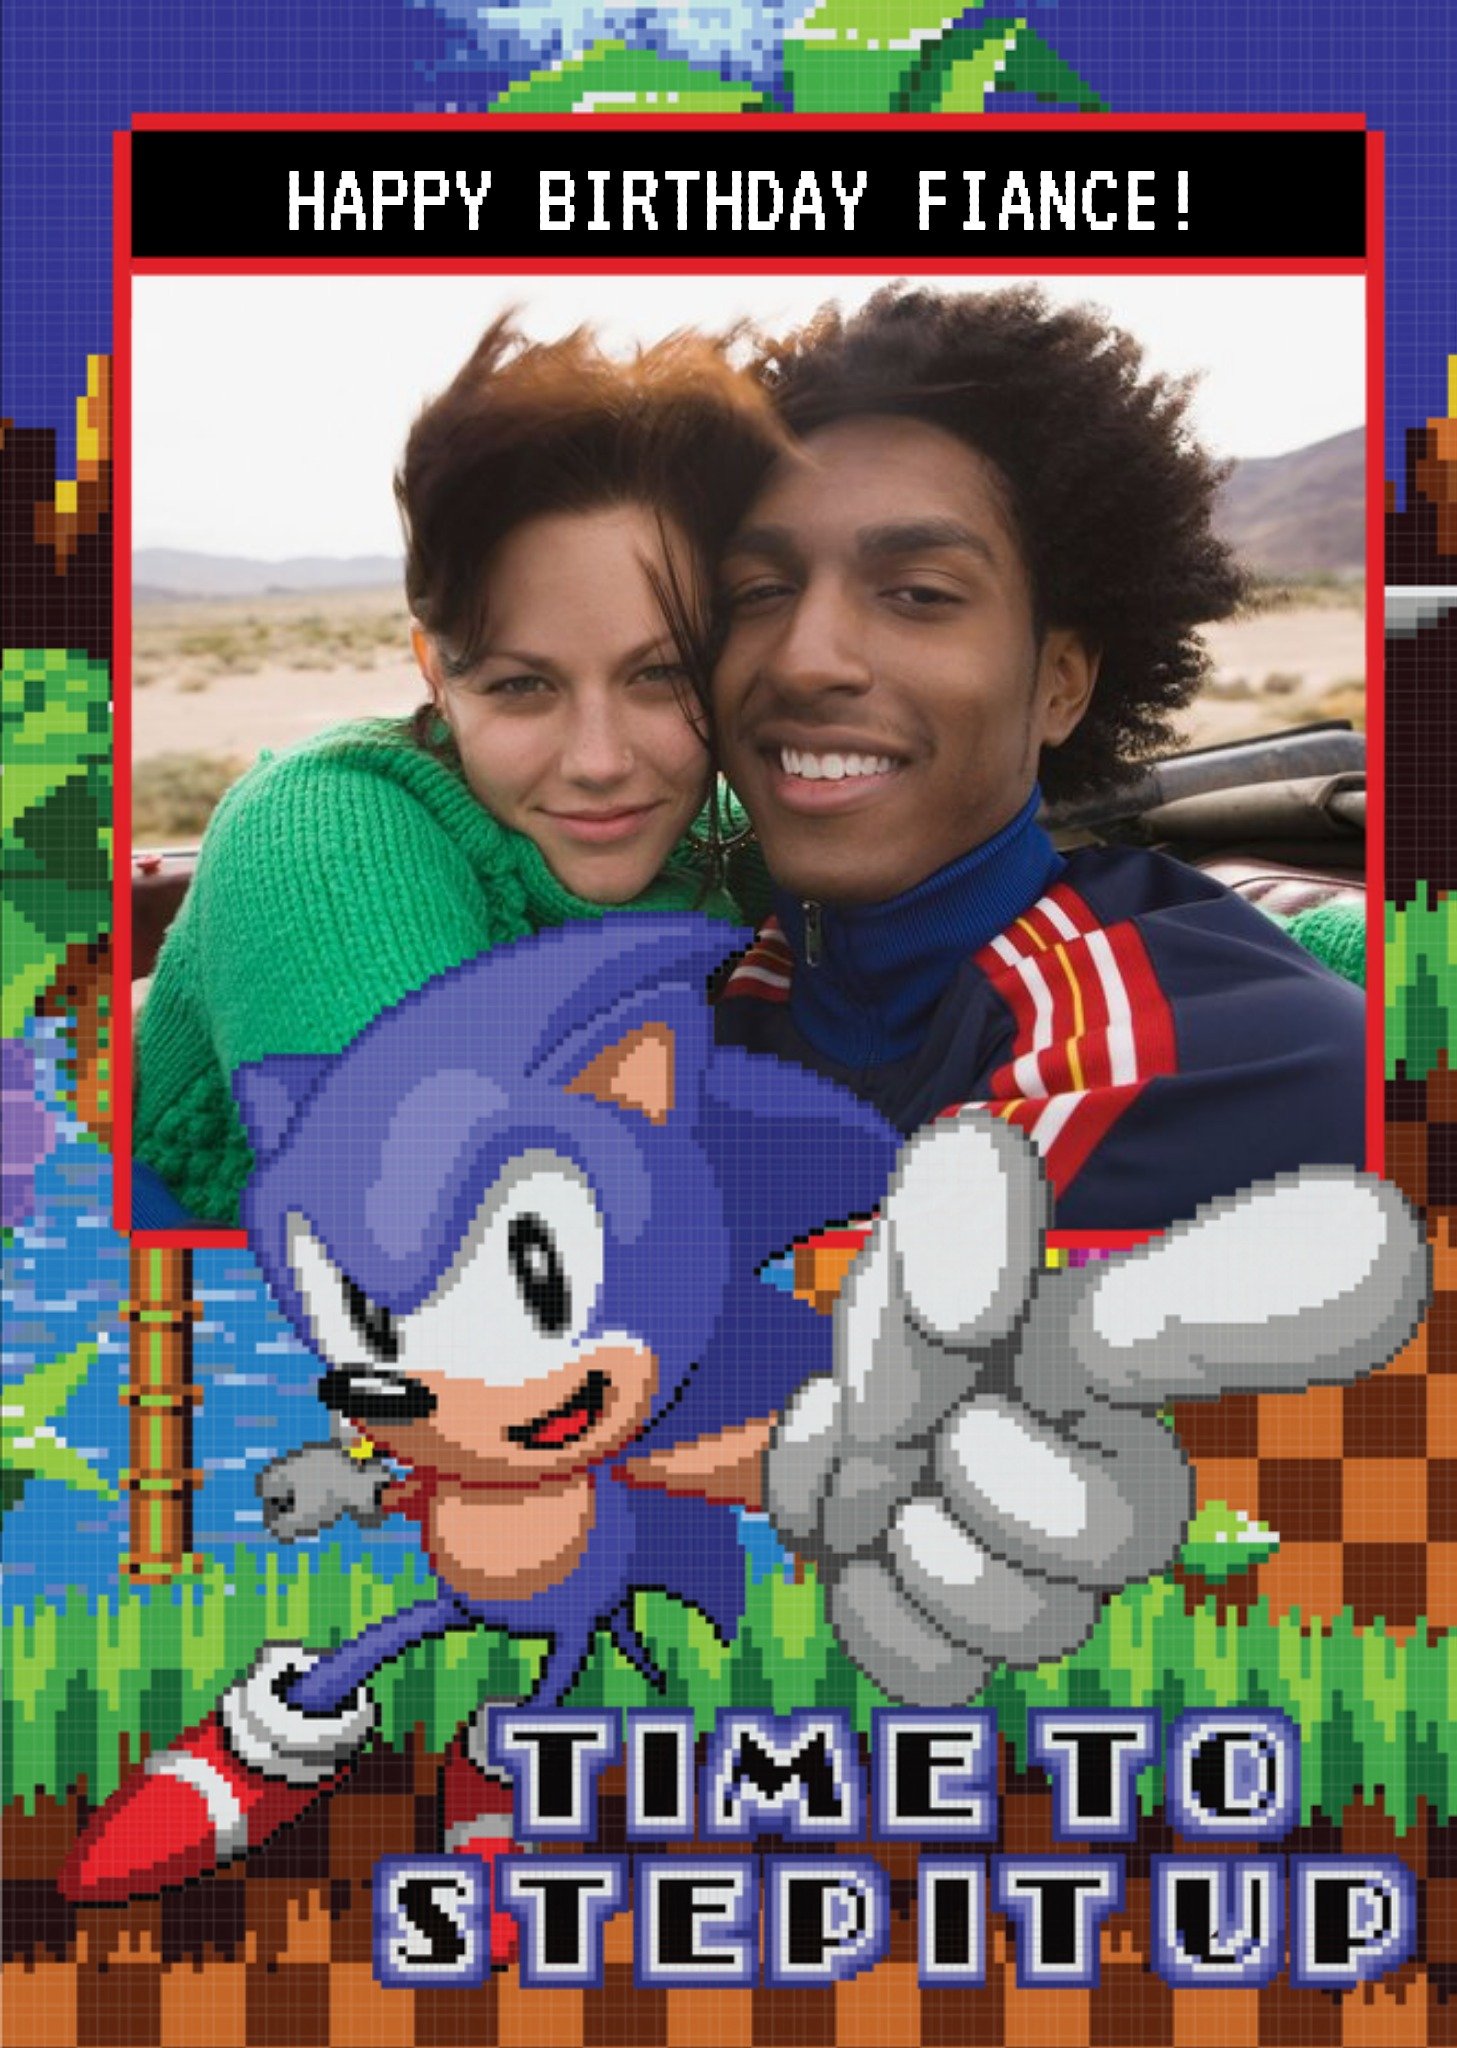 Sega Sonic Pixel Art Game Time To Set It Up Photo Upload Card, Large